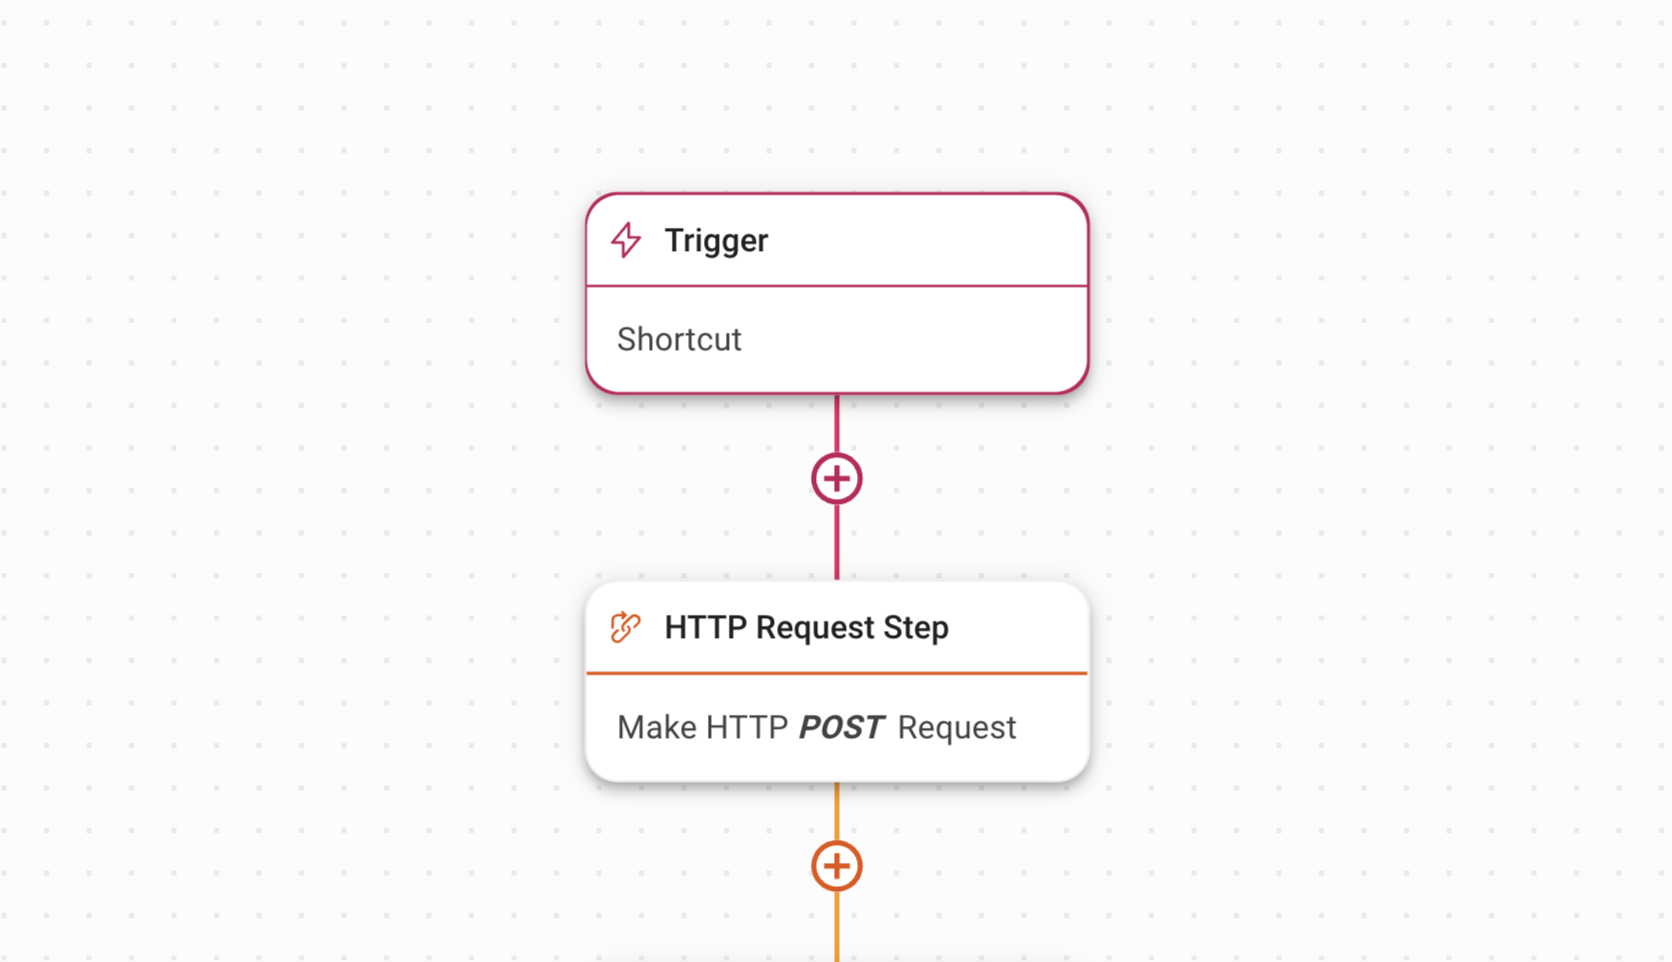 captura de pantalla de un flujo de trabajo para hacer una solicitud de publicación HTTP